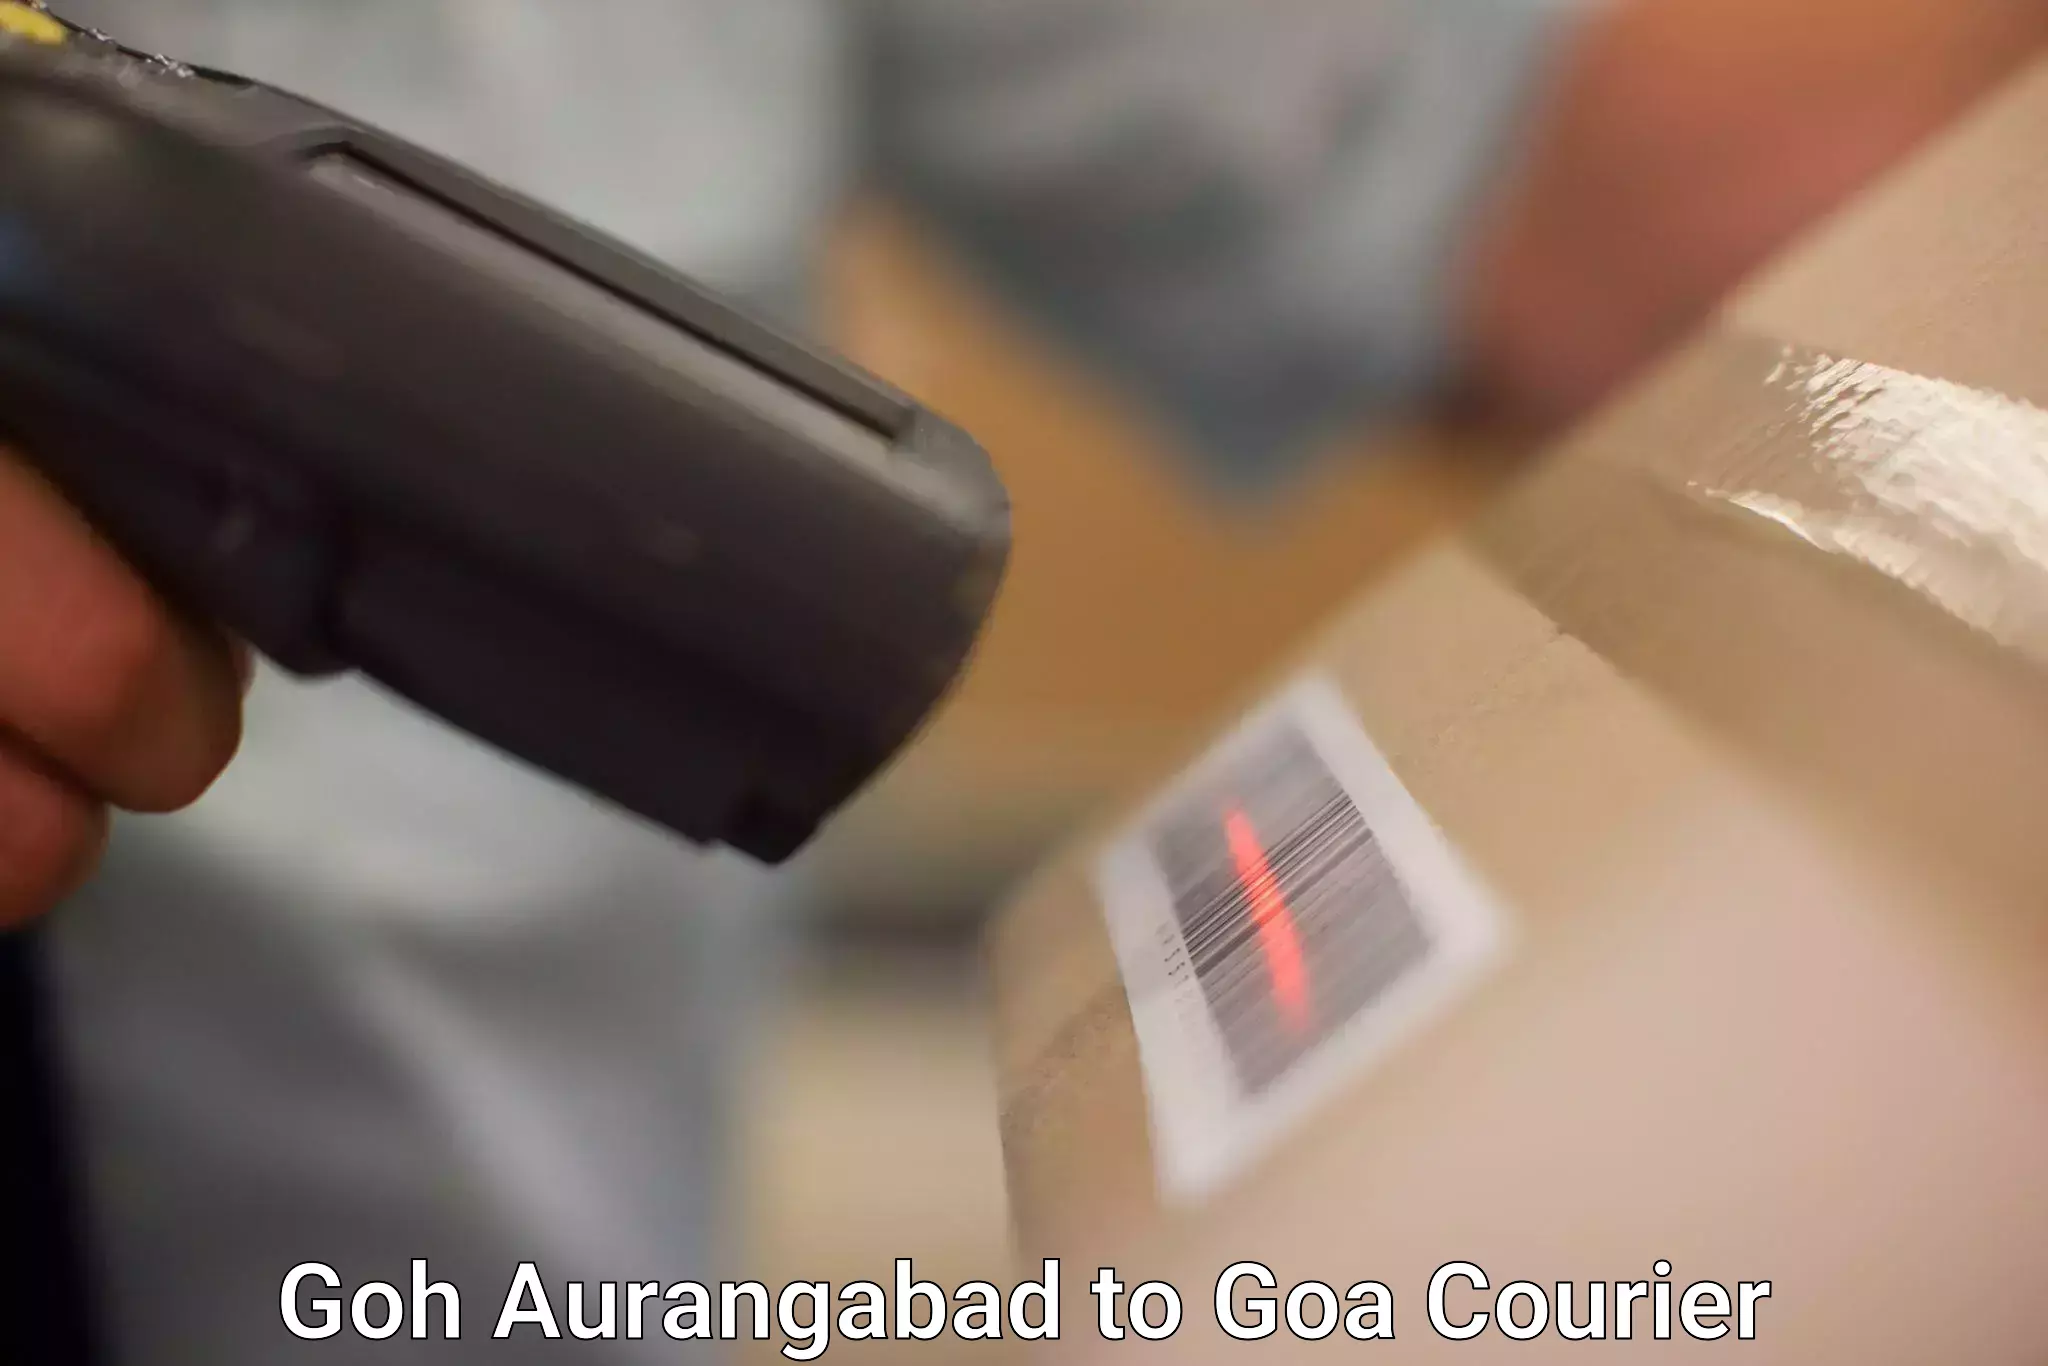 Budget-friendly shipping Goh Aurangabad to NIT Goa